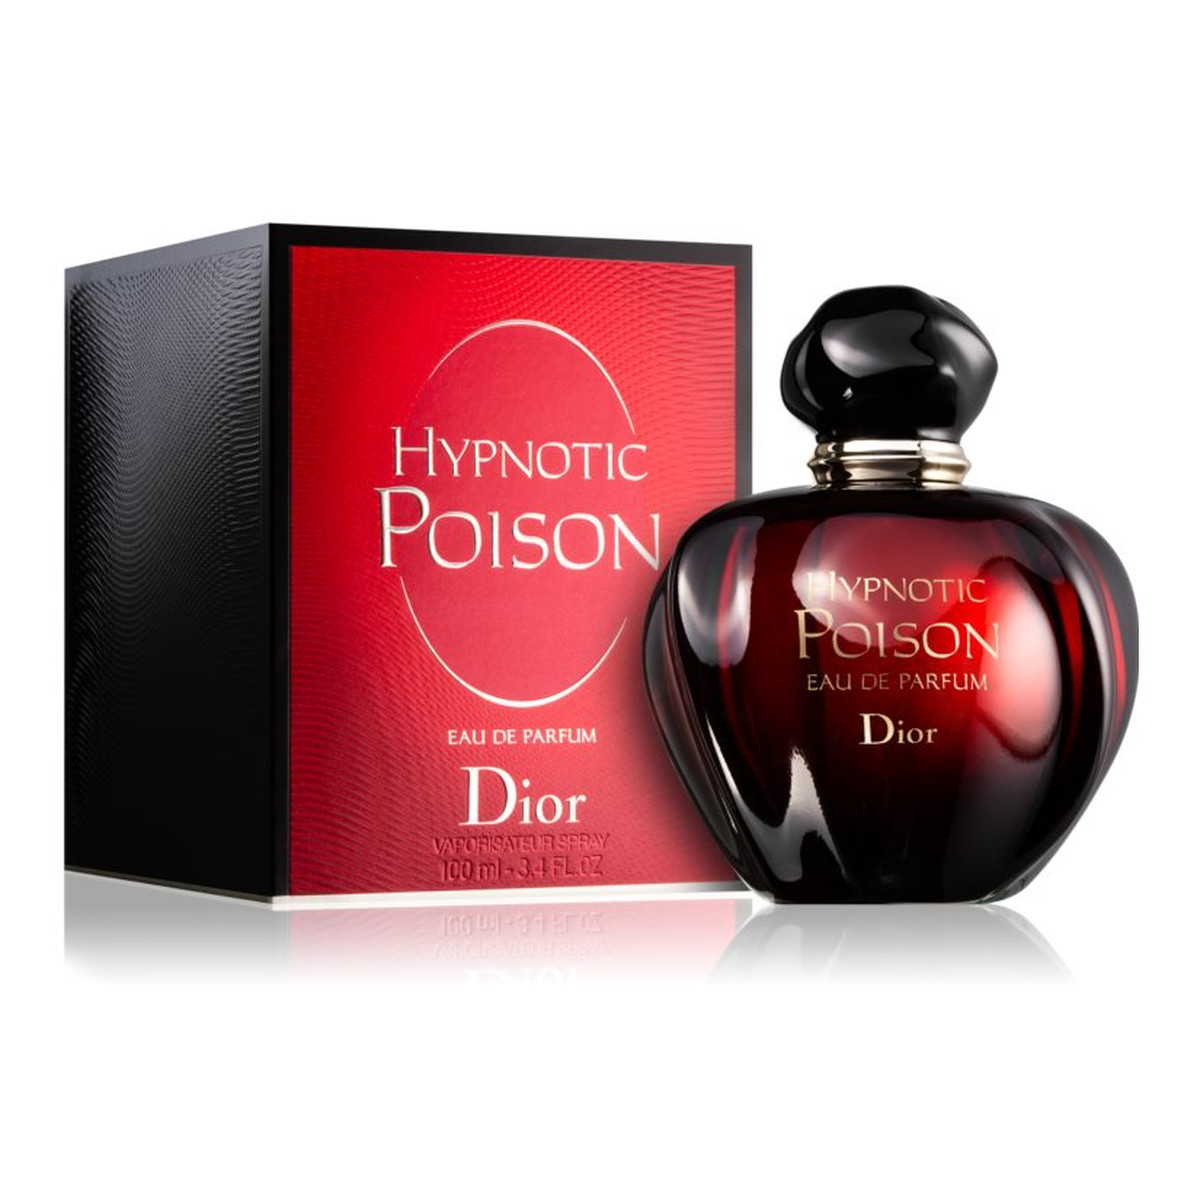 Dior Hypnotic Poison woda perfumowana 100ml